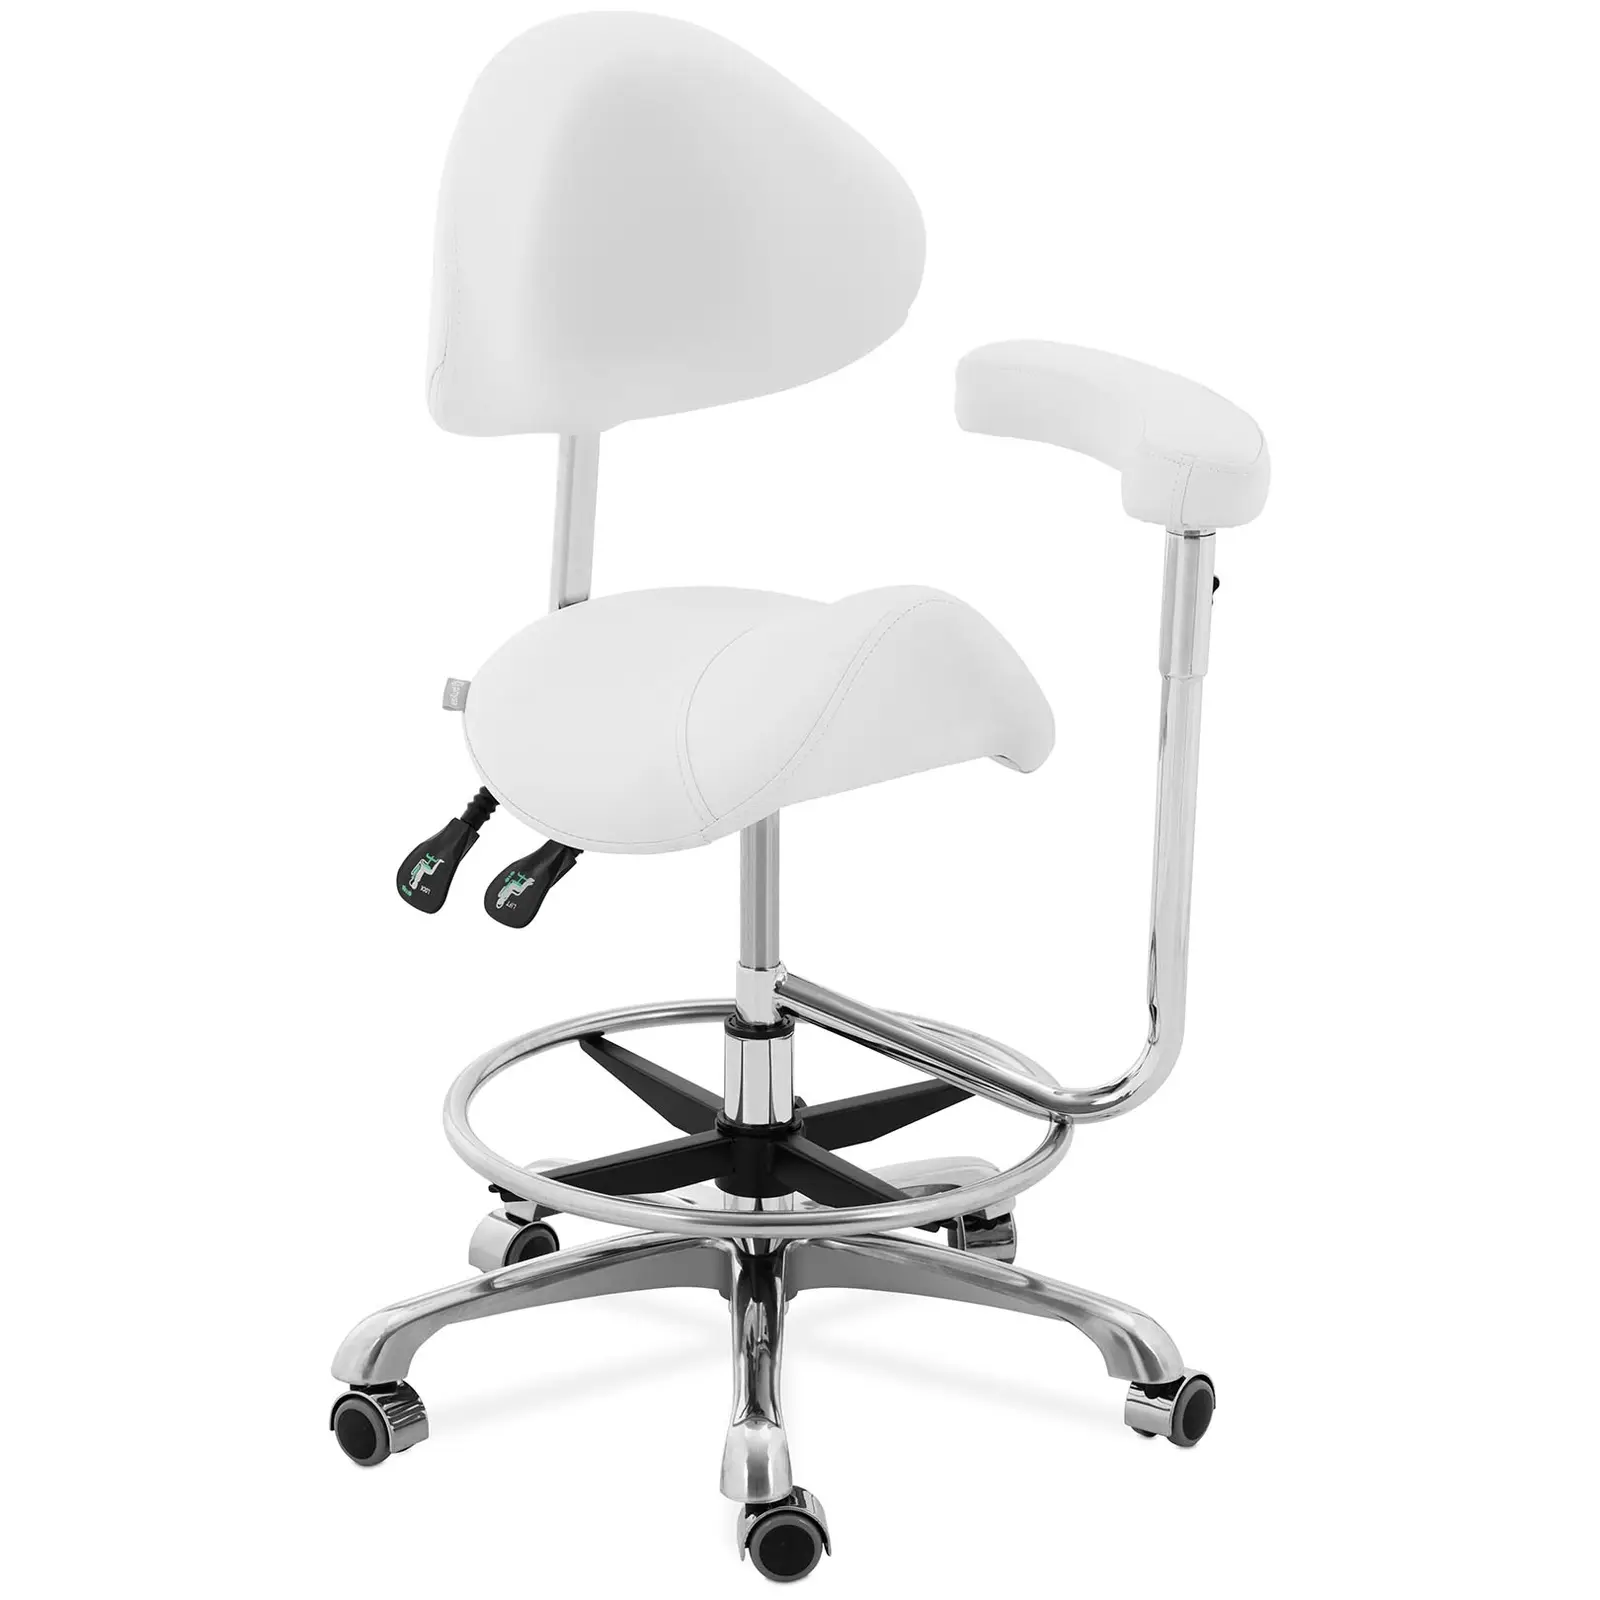 Καρέκλα σέλας με υποβραχιόνιο - ρυθμιζόμενη καθ' ύψος πλάτη και ύψος καθίσματος - 51 - 61 cm - 150 kg - White